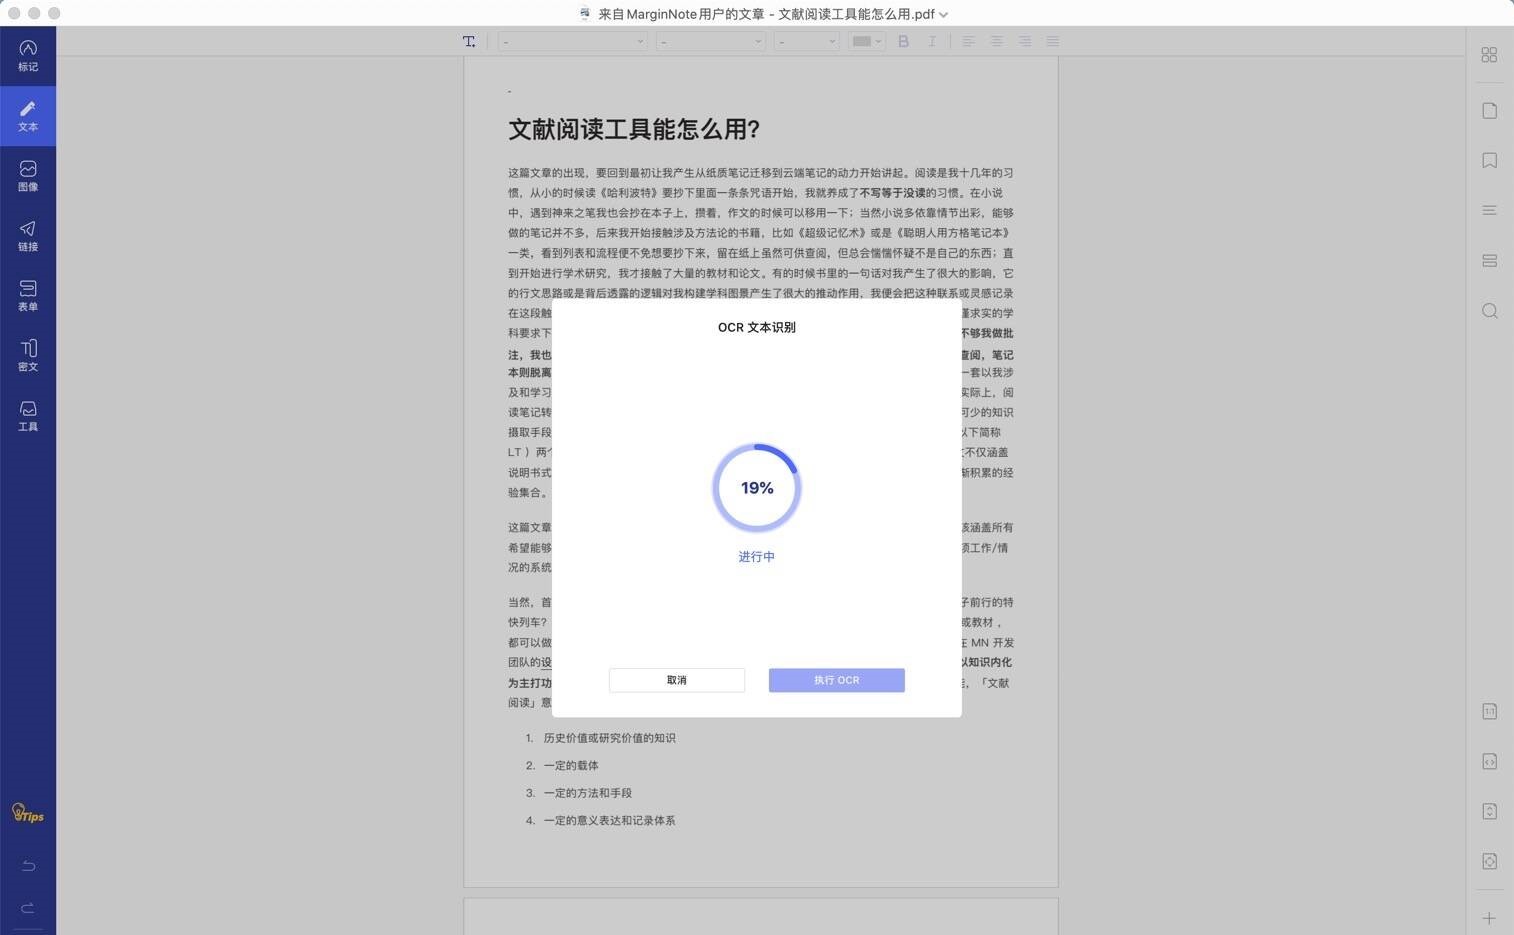 Wondershare PDFelement Pro for Mac(专业PDF编辑软件)v8.5.0中文直装版